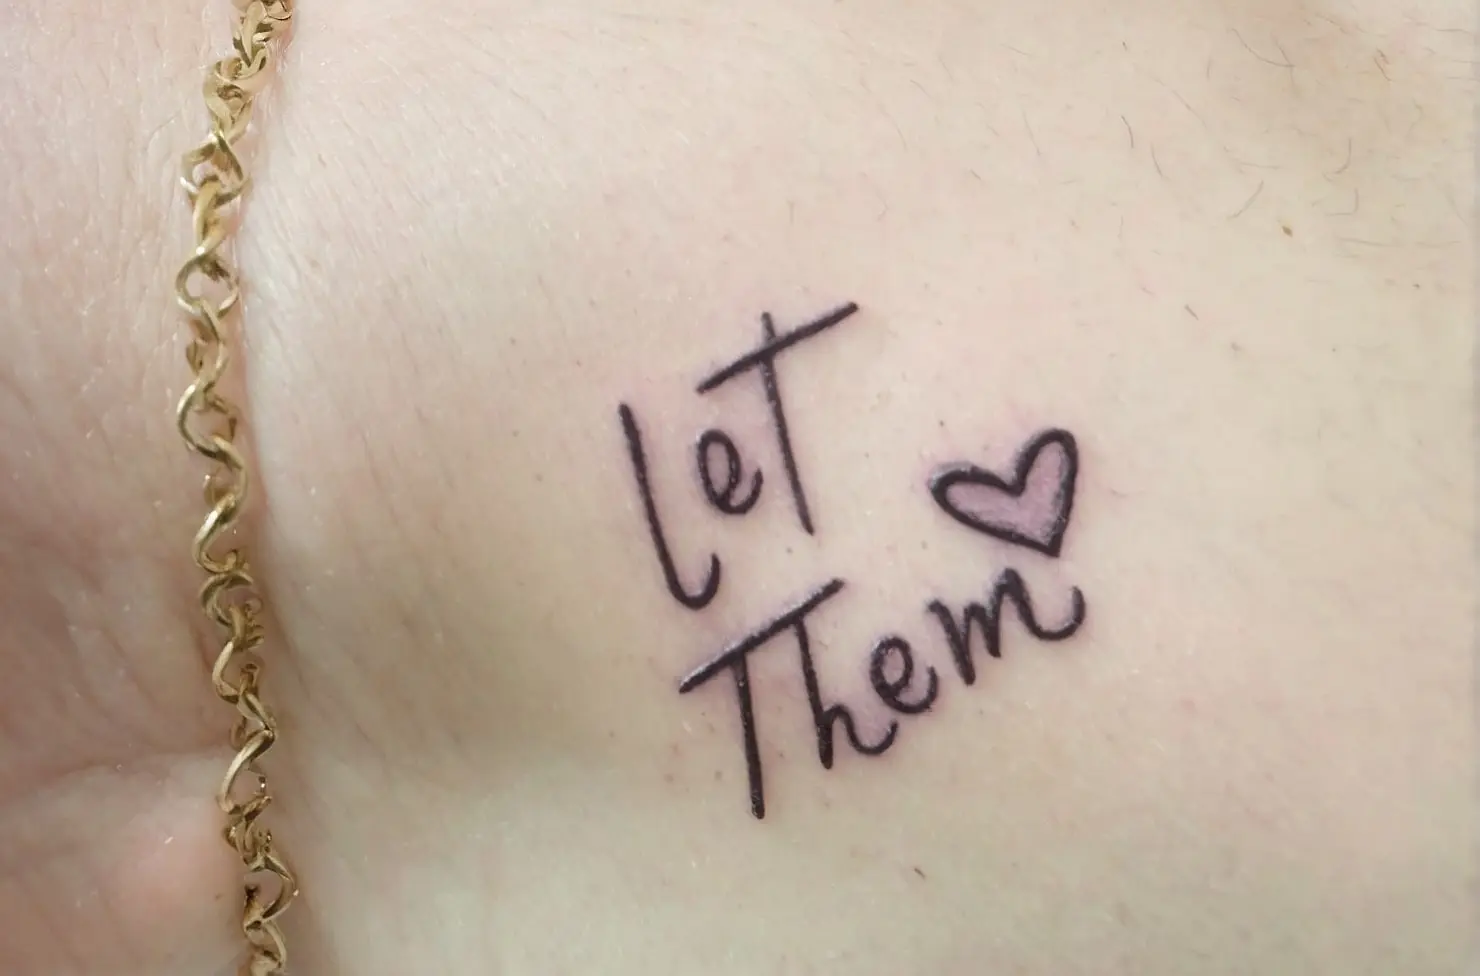 let them tattoo